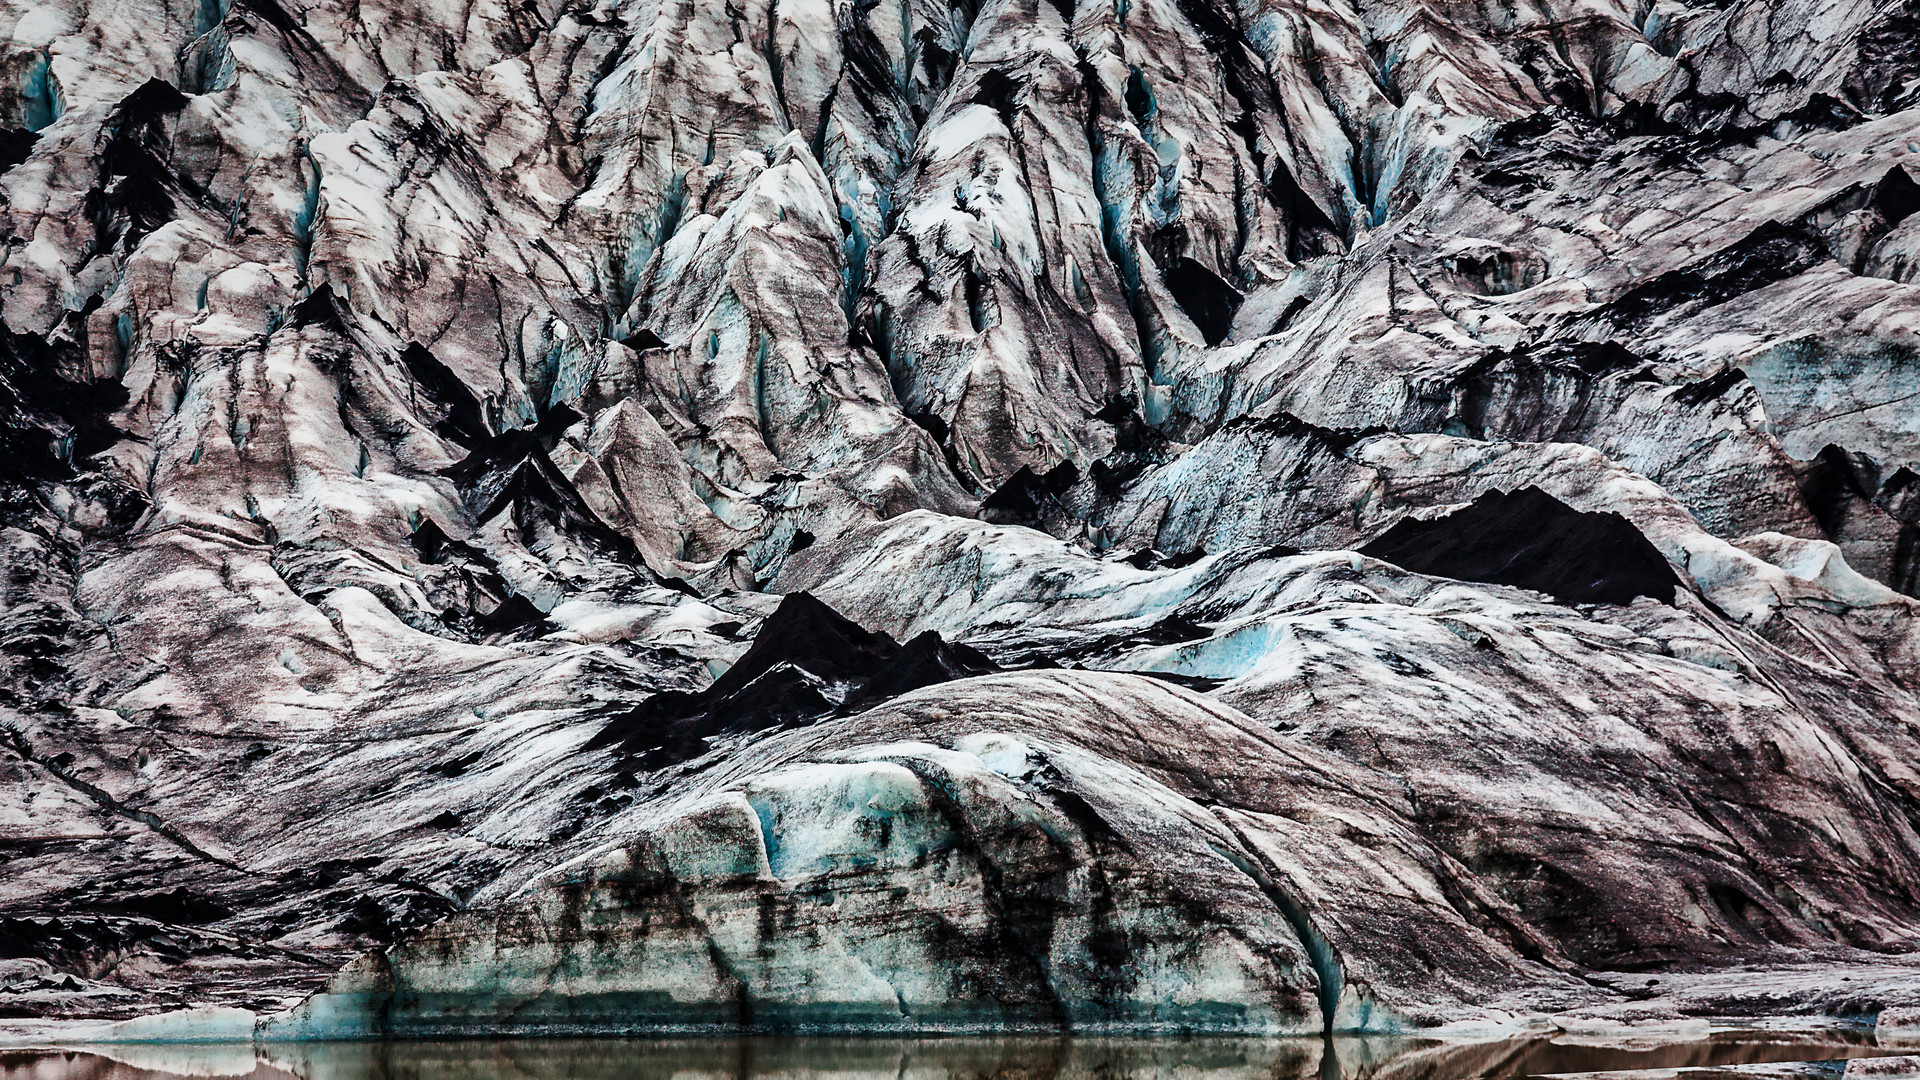 Gletscherstrukturen